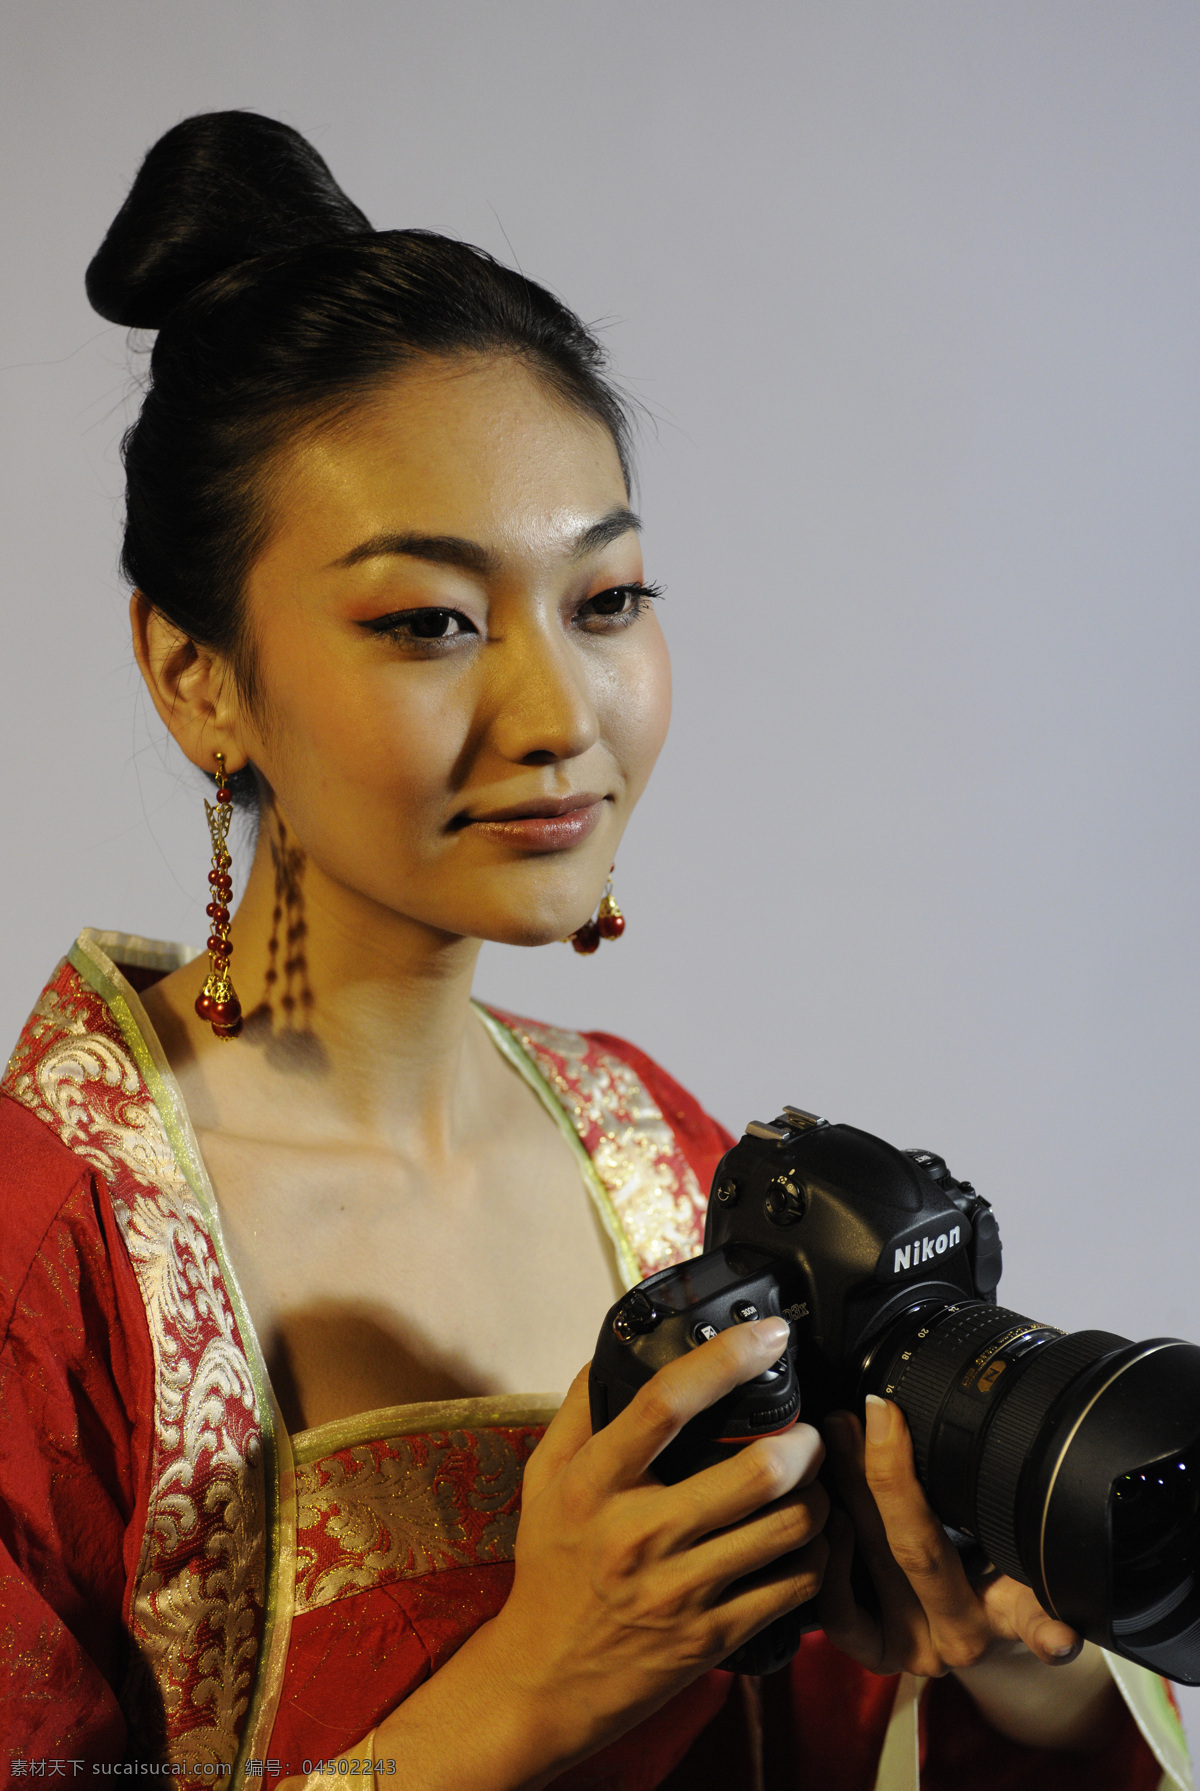 亚洲美女写真 日本 广告模特 摄影模特 尼康d3x 样品图片 亚洲美女 写真集 人物摄影 人物图库